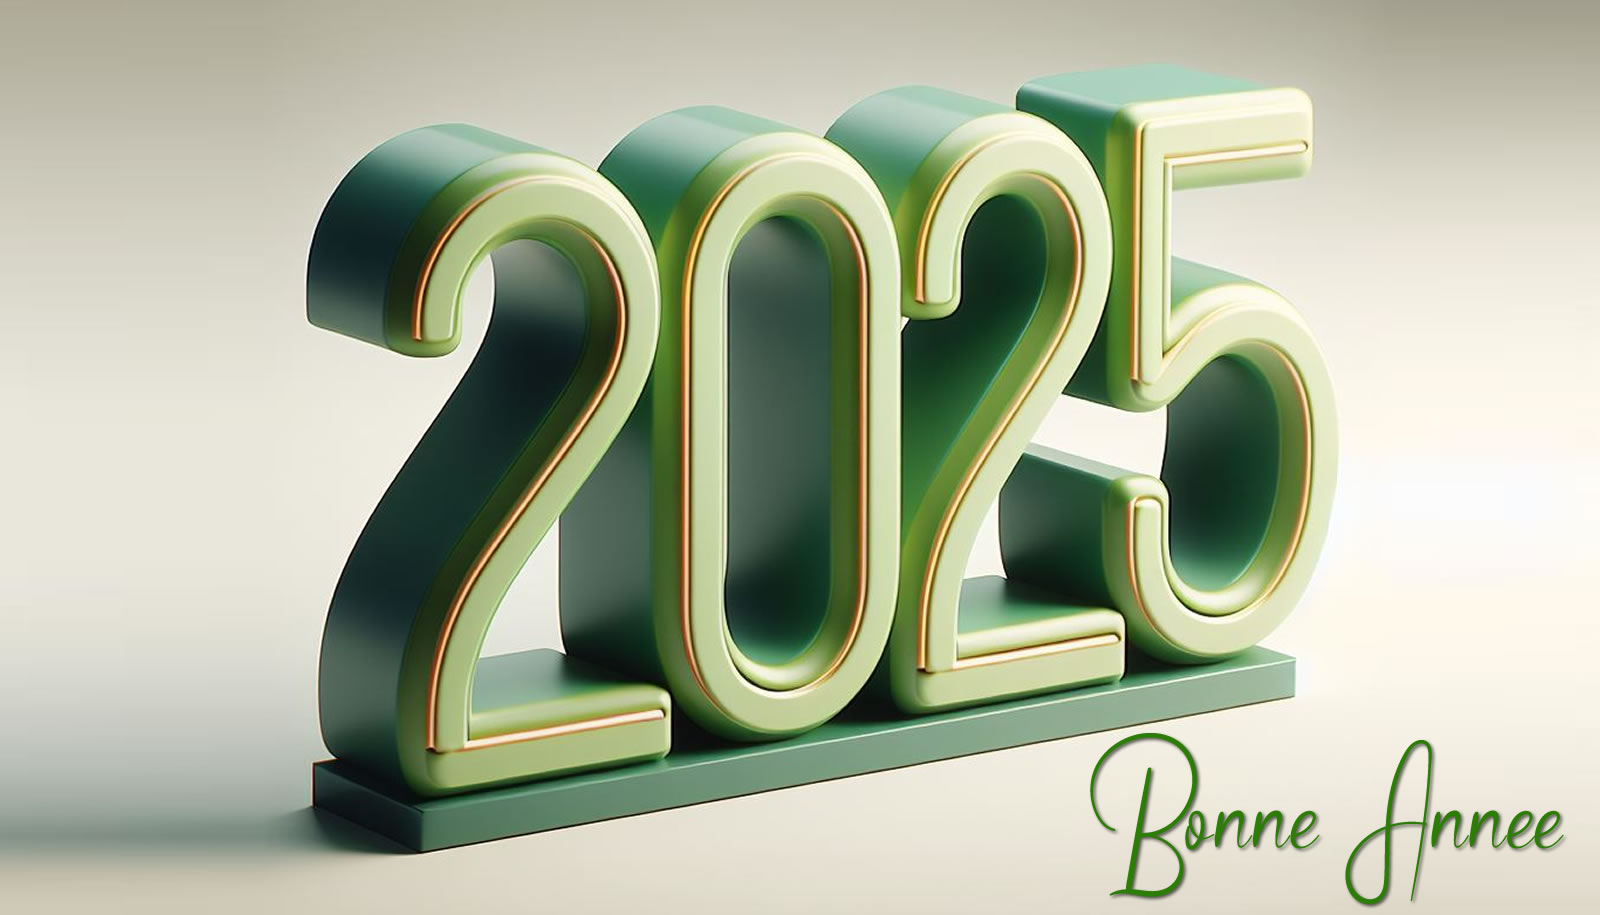 Image bonne année, peignons nous-mêmes 2025 avec espoir